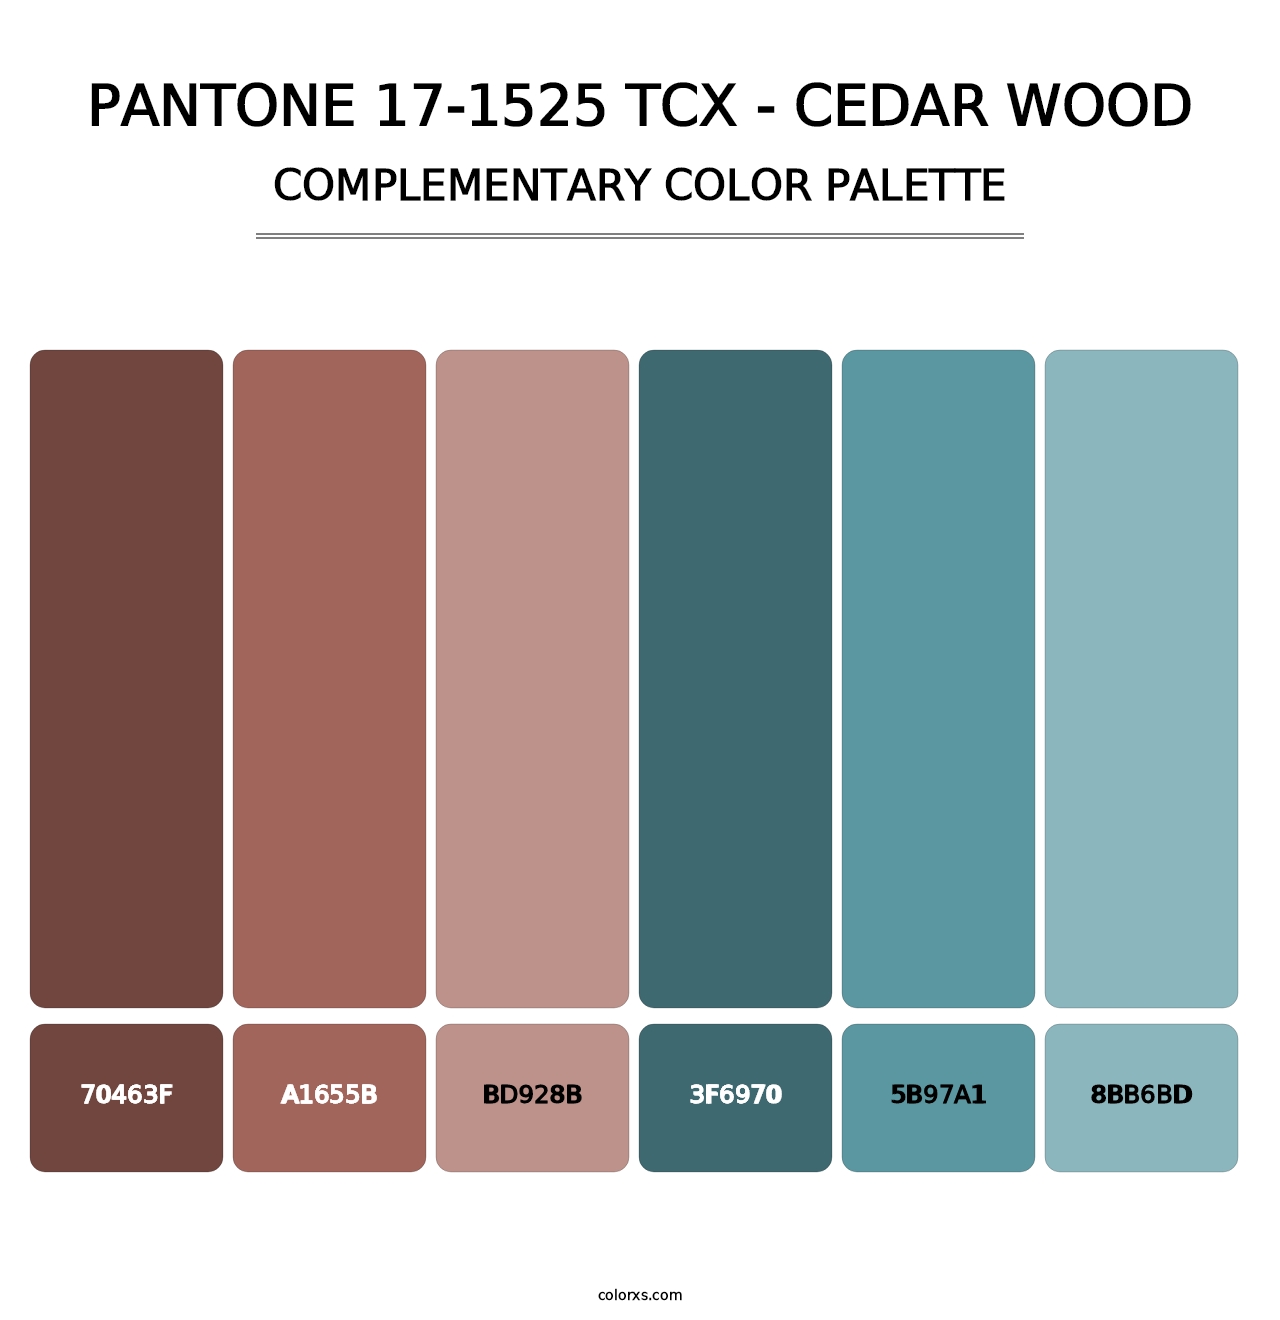 PANTONE 17-1525 TCX - Cedar Wood - Complementary Color Palette